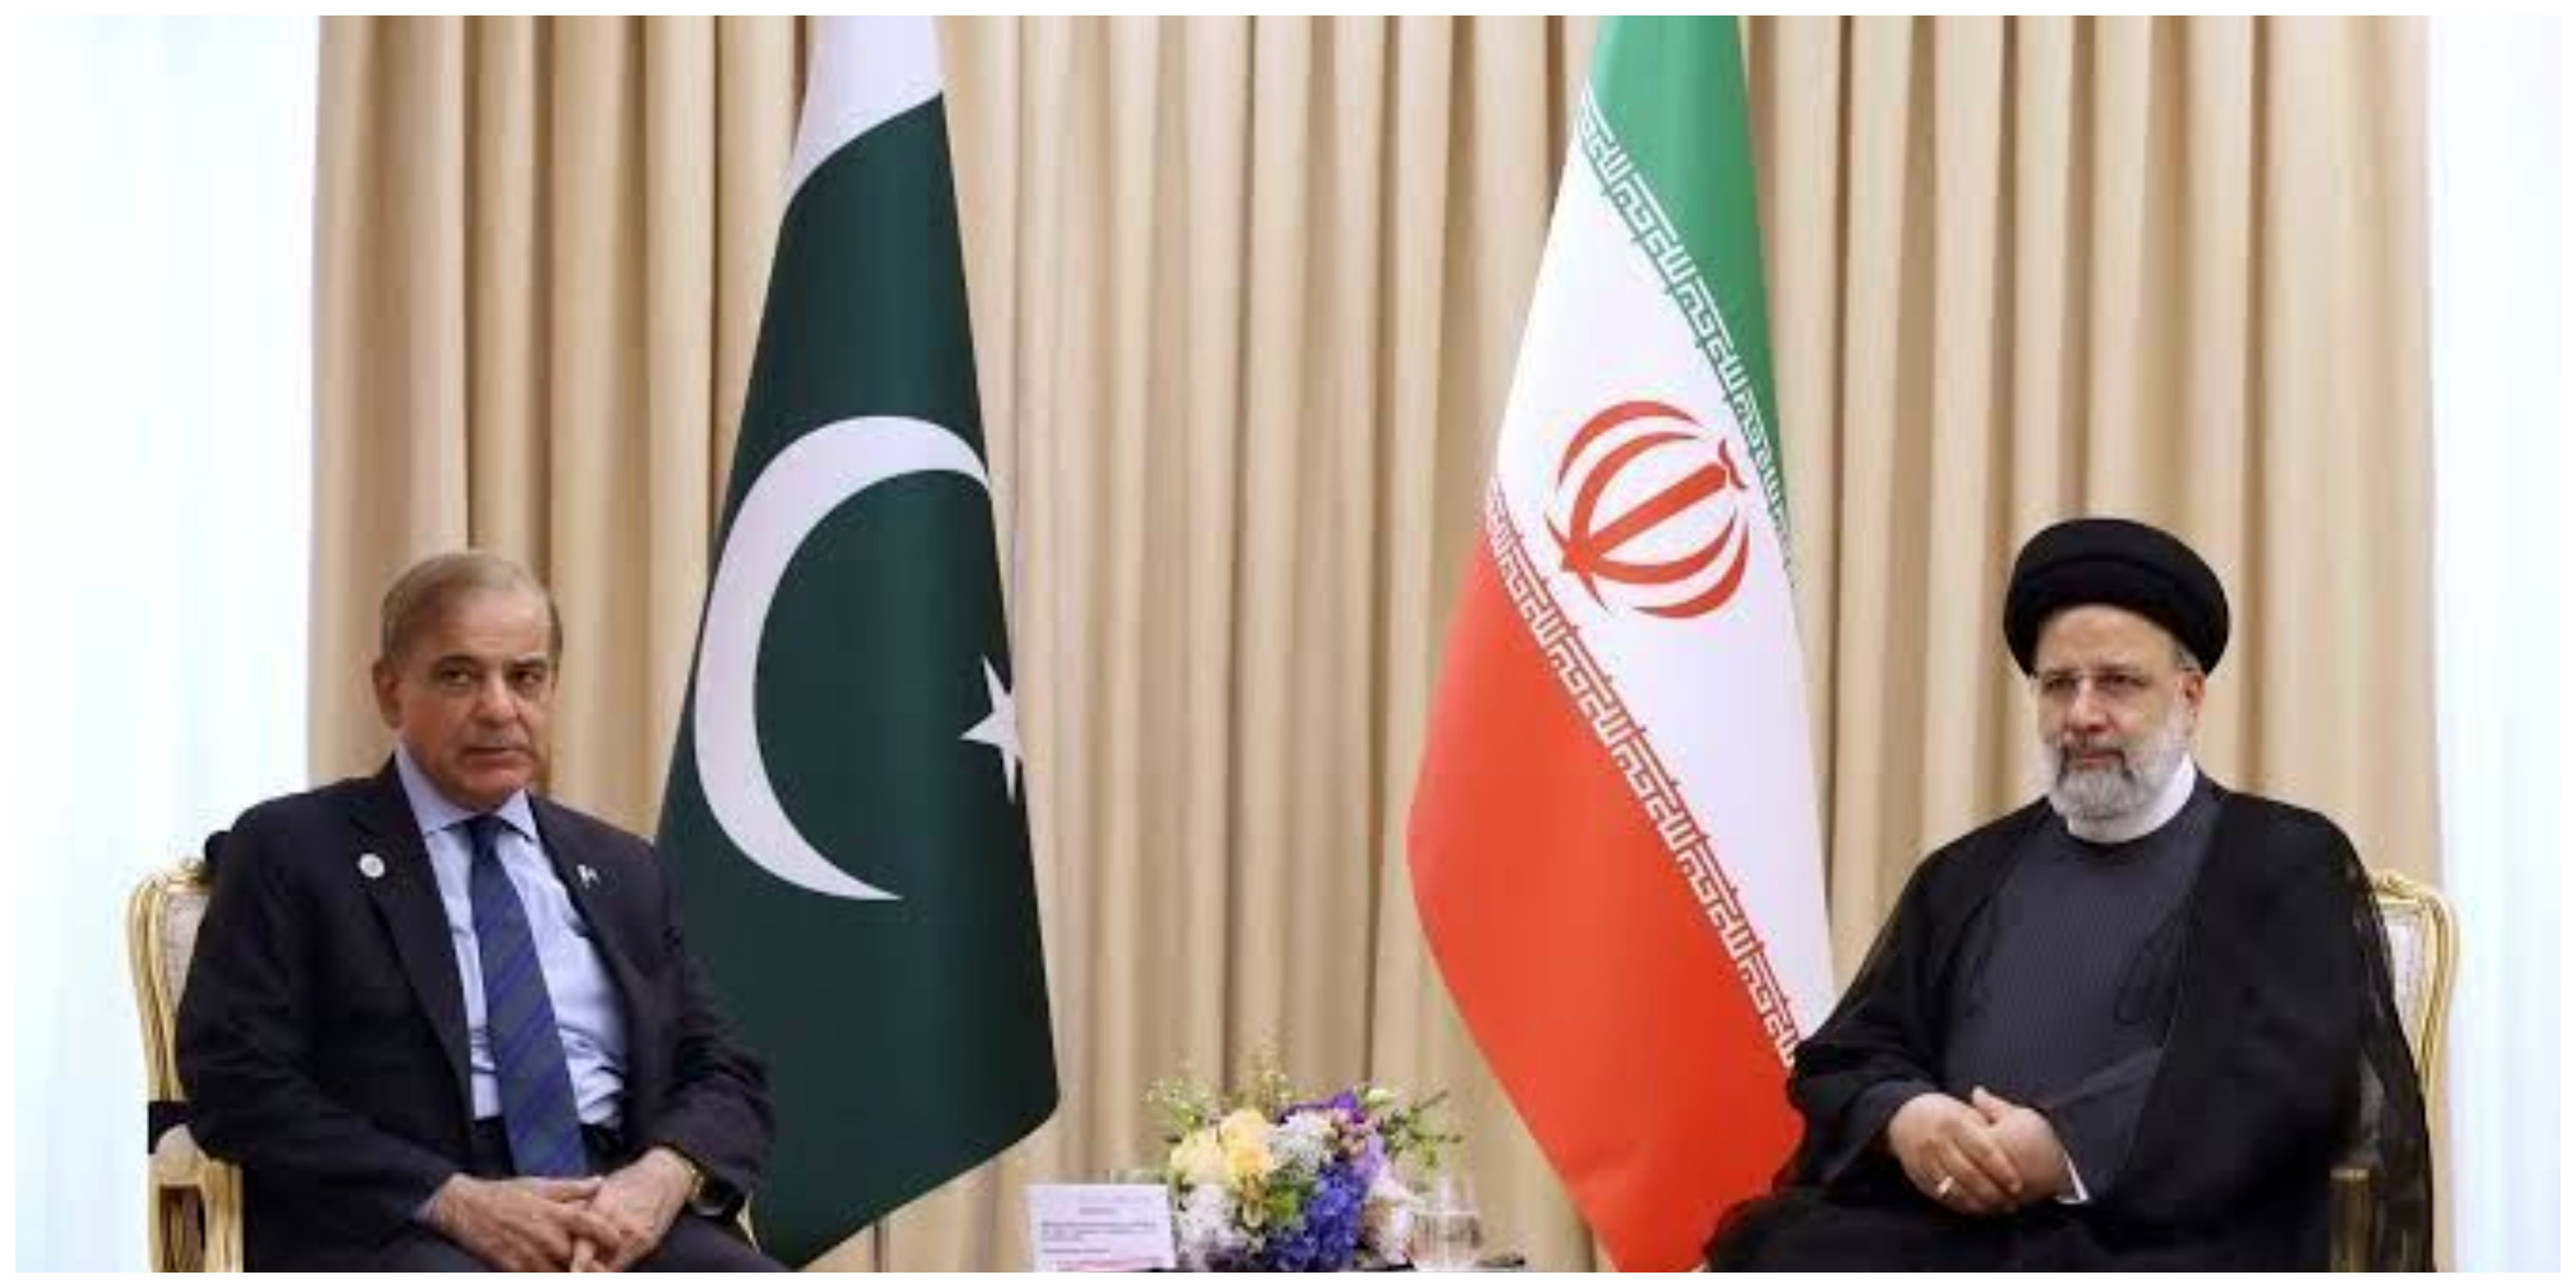 استقبال پاکستان از توافق تهران-ریاض/ نتیجه این توافق برد- برد است